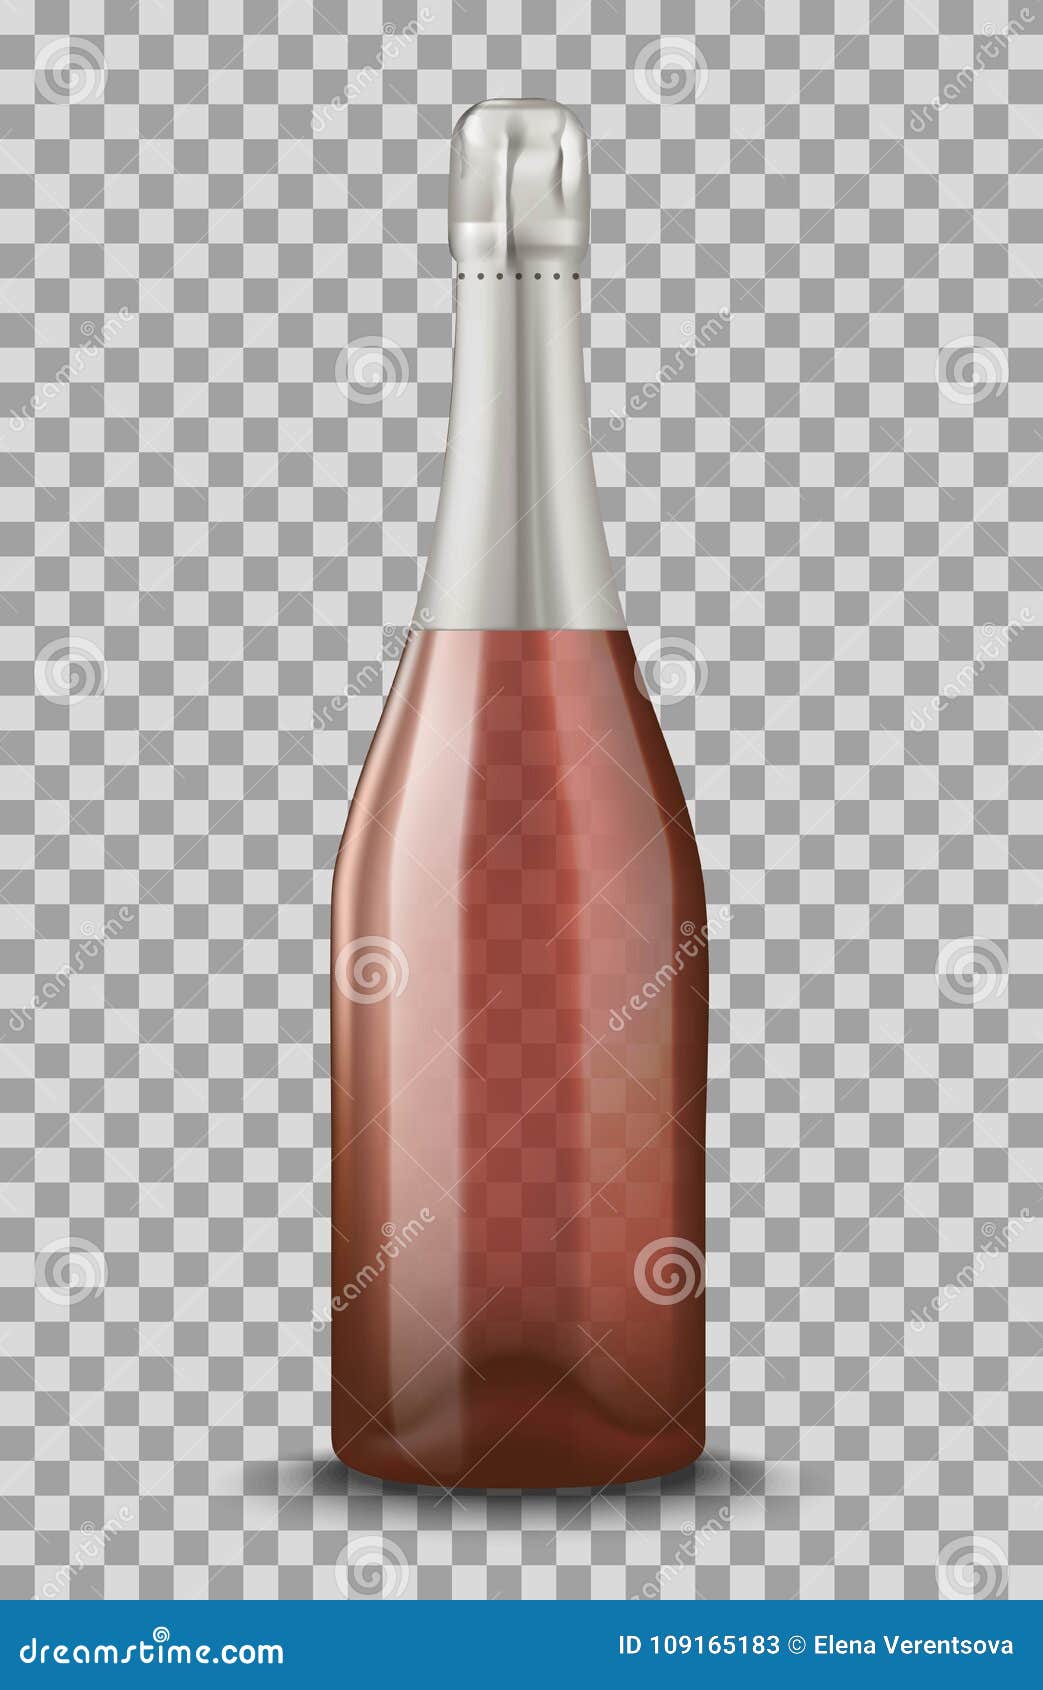 Pink Champagne Bottle Stock Illustrations 1 294 Pink Champagne Bottle Stock Illustrations Vectors Clipart Dreamstime